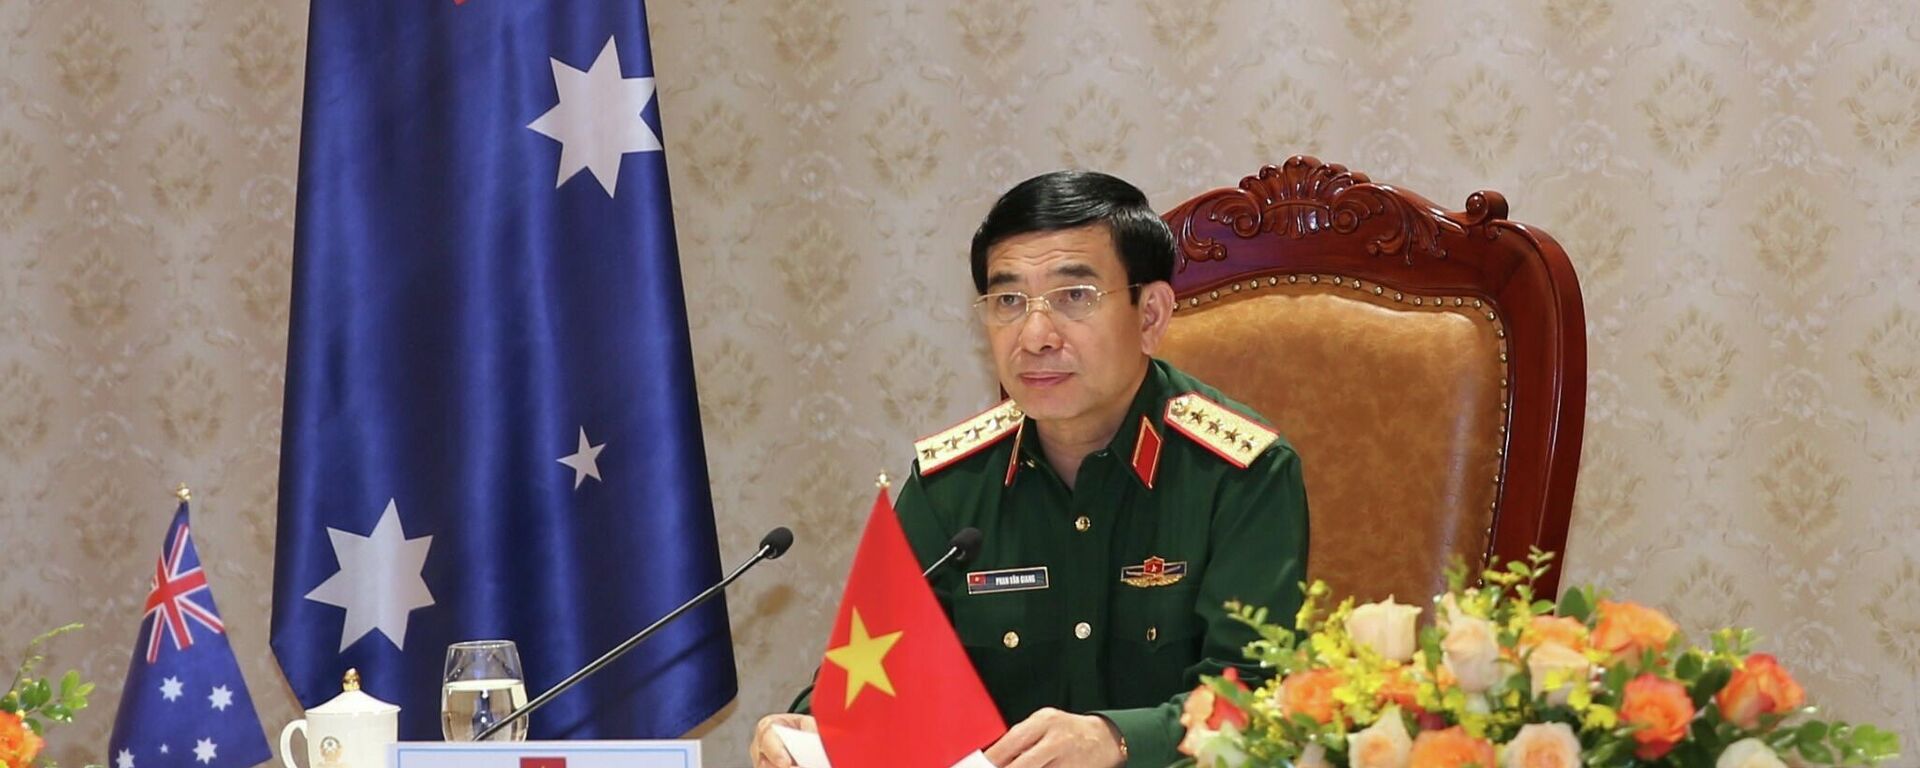 Bộ trưởng Bộ Quốc phòng Việt Nam điện đàm với Bộ trưởng Bộ Quốc phòng Australia - Sputnik Việt Nam, 1920, 09.11.2021